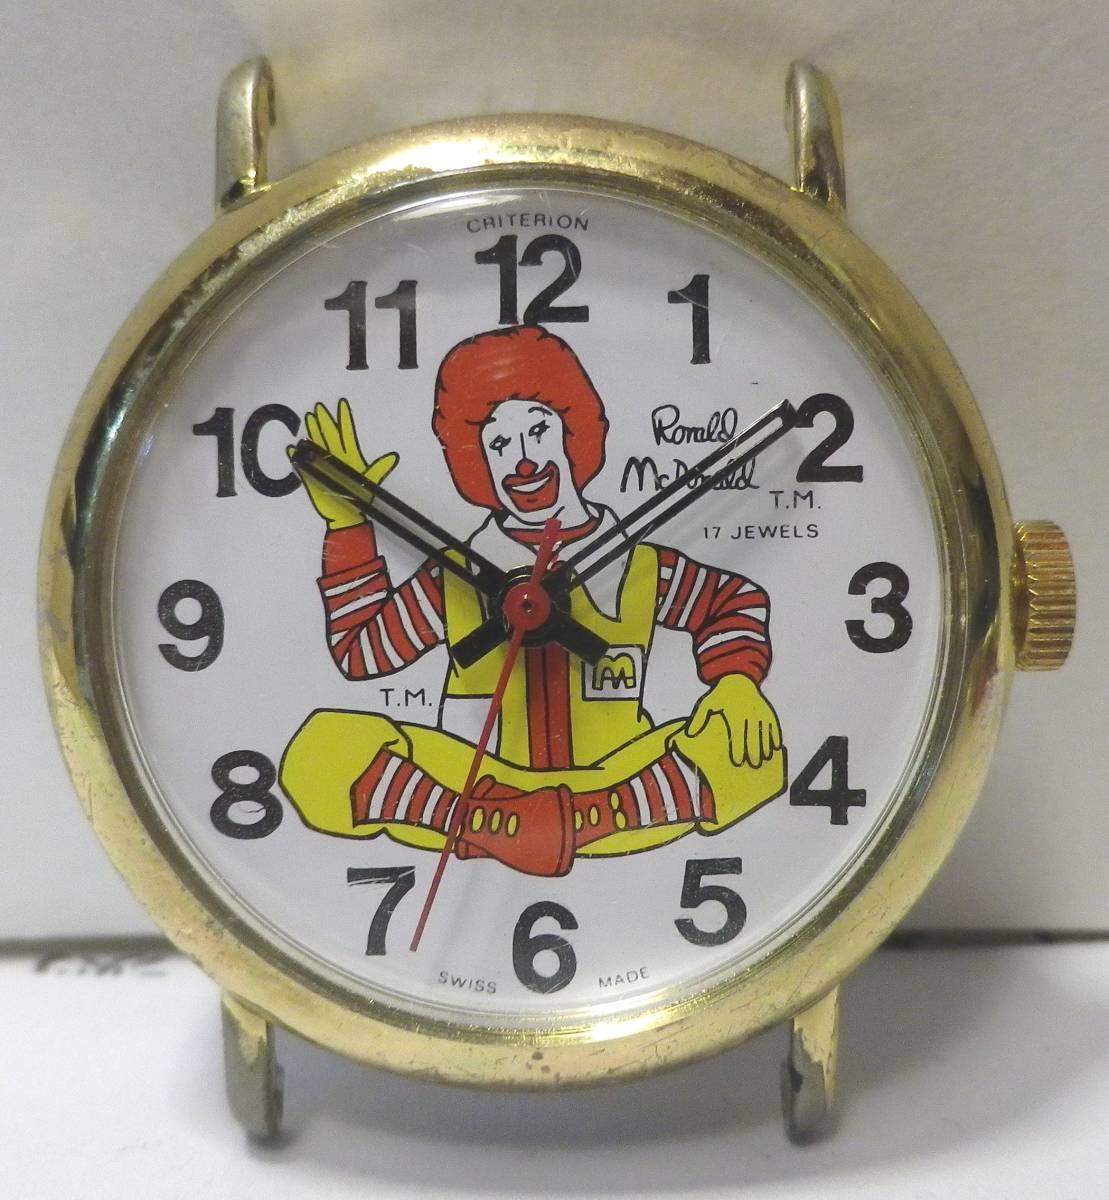 79 'Antique McDonald's Donald McDonald Hate Watch Доступные редкие критерии "